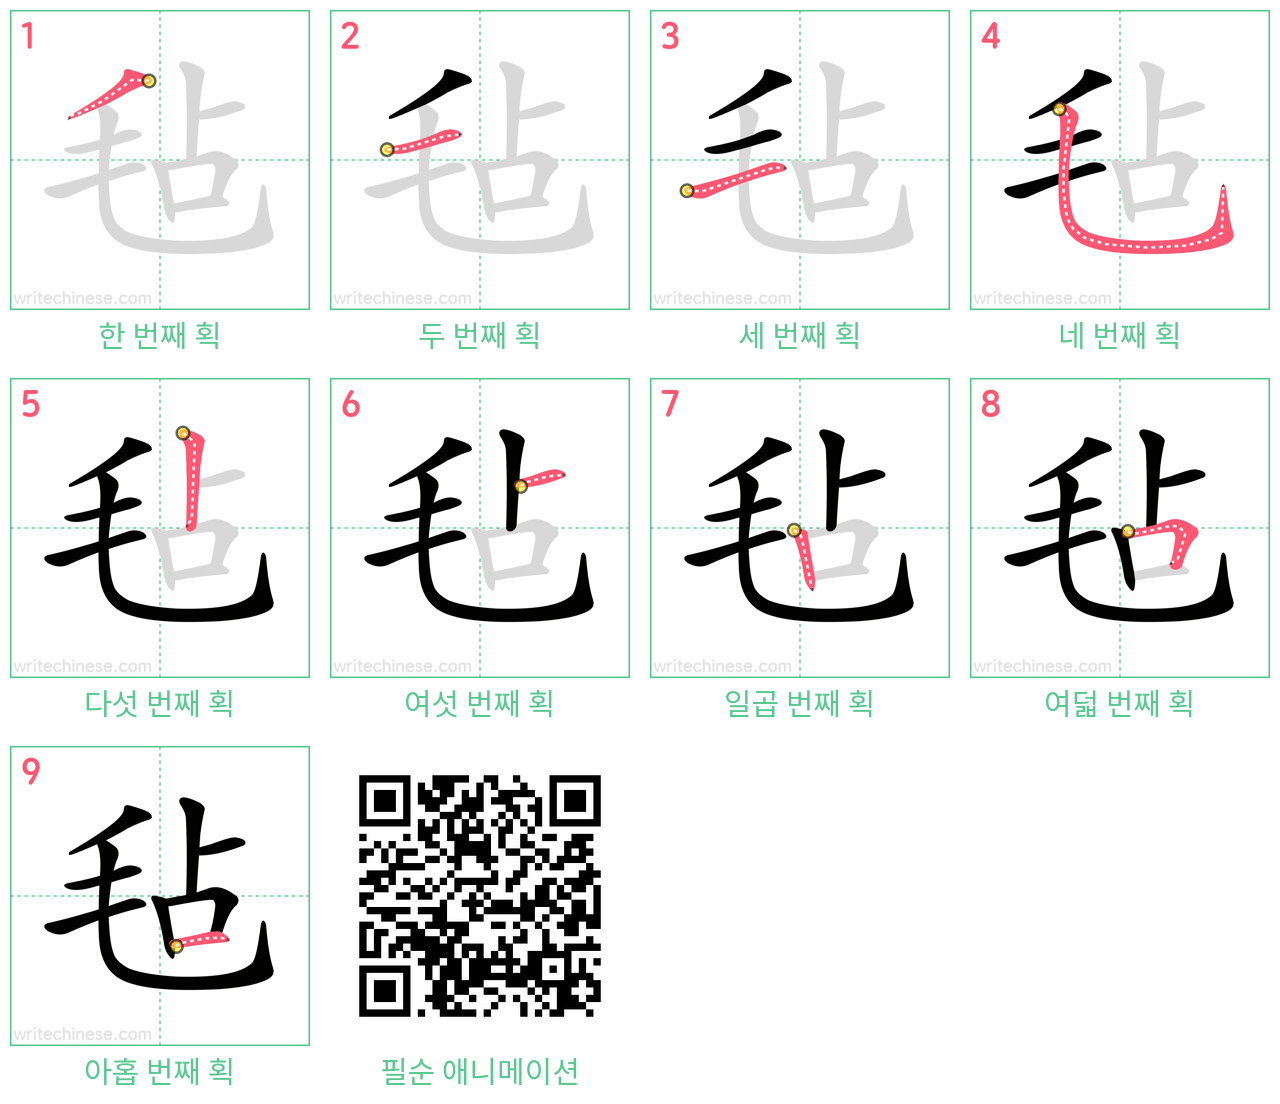 毡 step-by-step stroke order diagrams